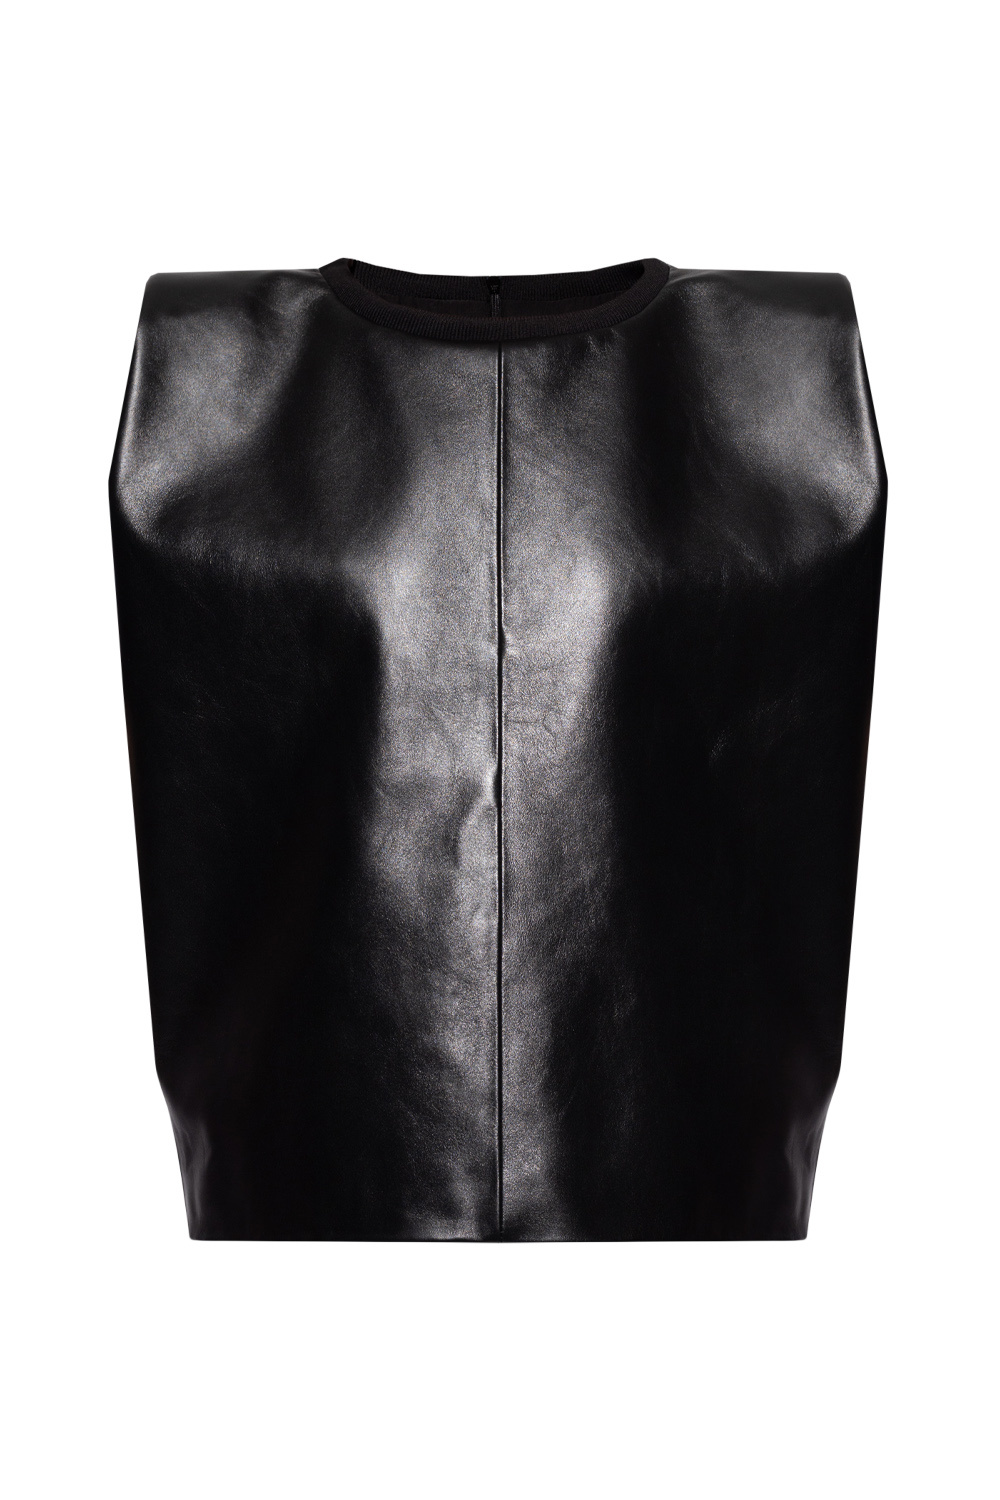 The Mannei ‘Umayyad’ leather sleeveless top